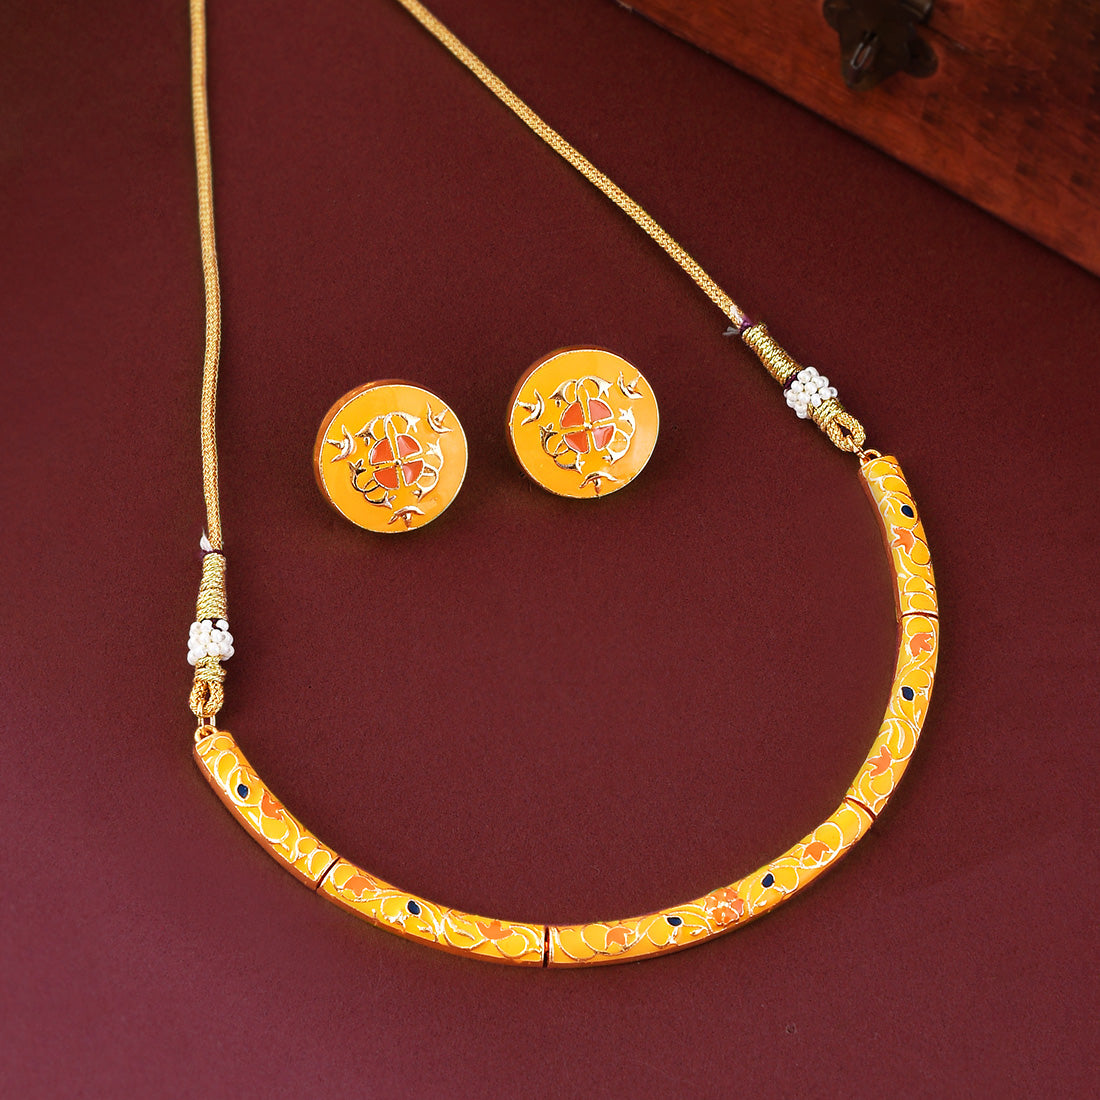 Enameled Elegance Orange Floral Gold-Plated Necklace Set